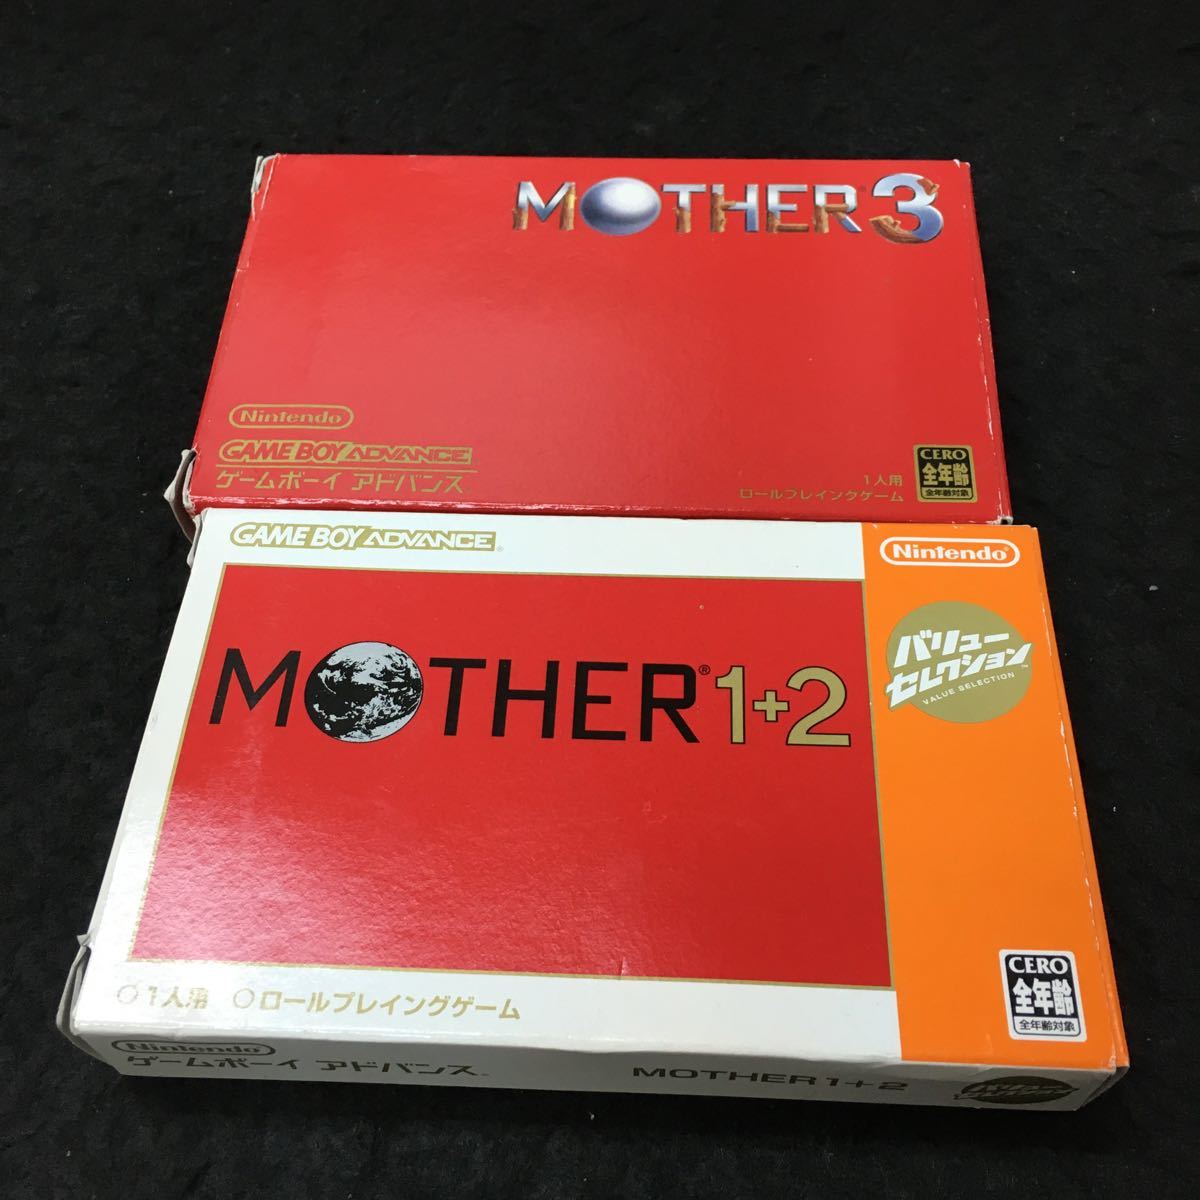 まとめ-え Nintendo(ゲームボーイ アドバンス) MOTHER 1+2 / MOTHER 3 2個セット※7 _画像1